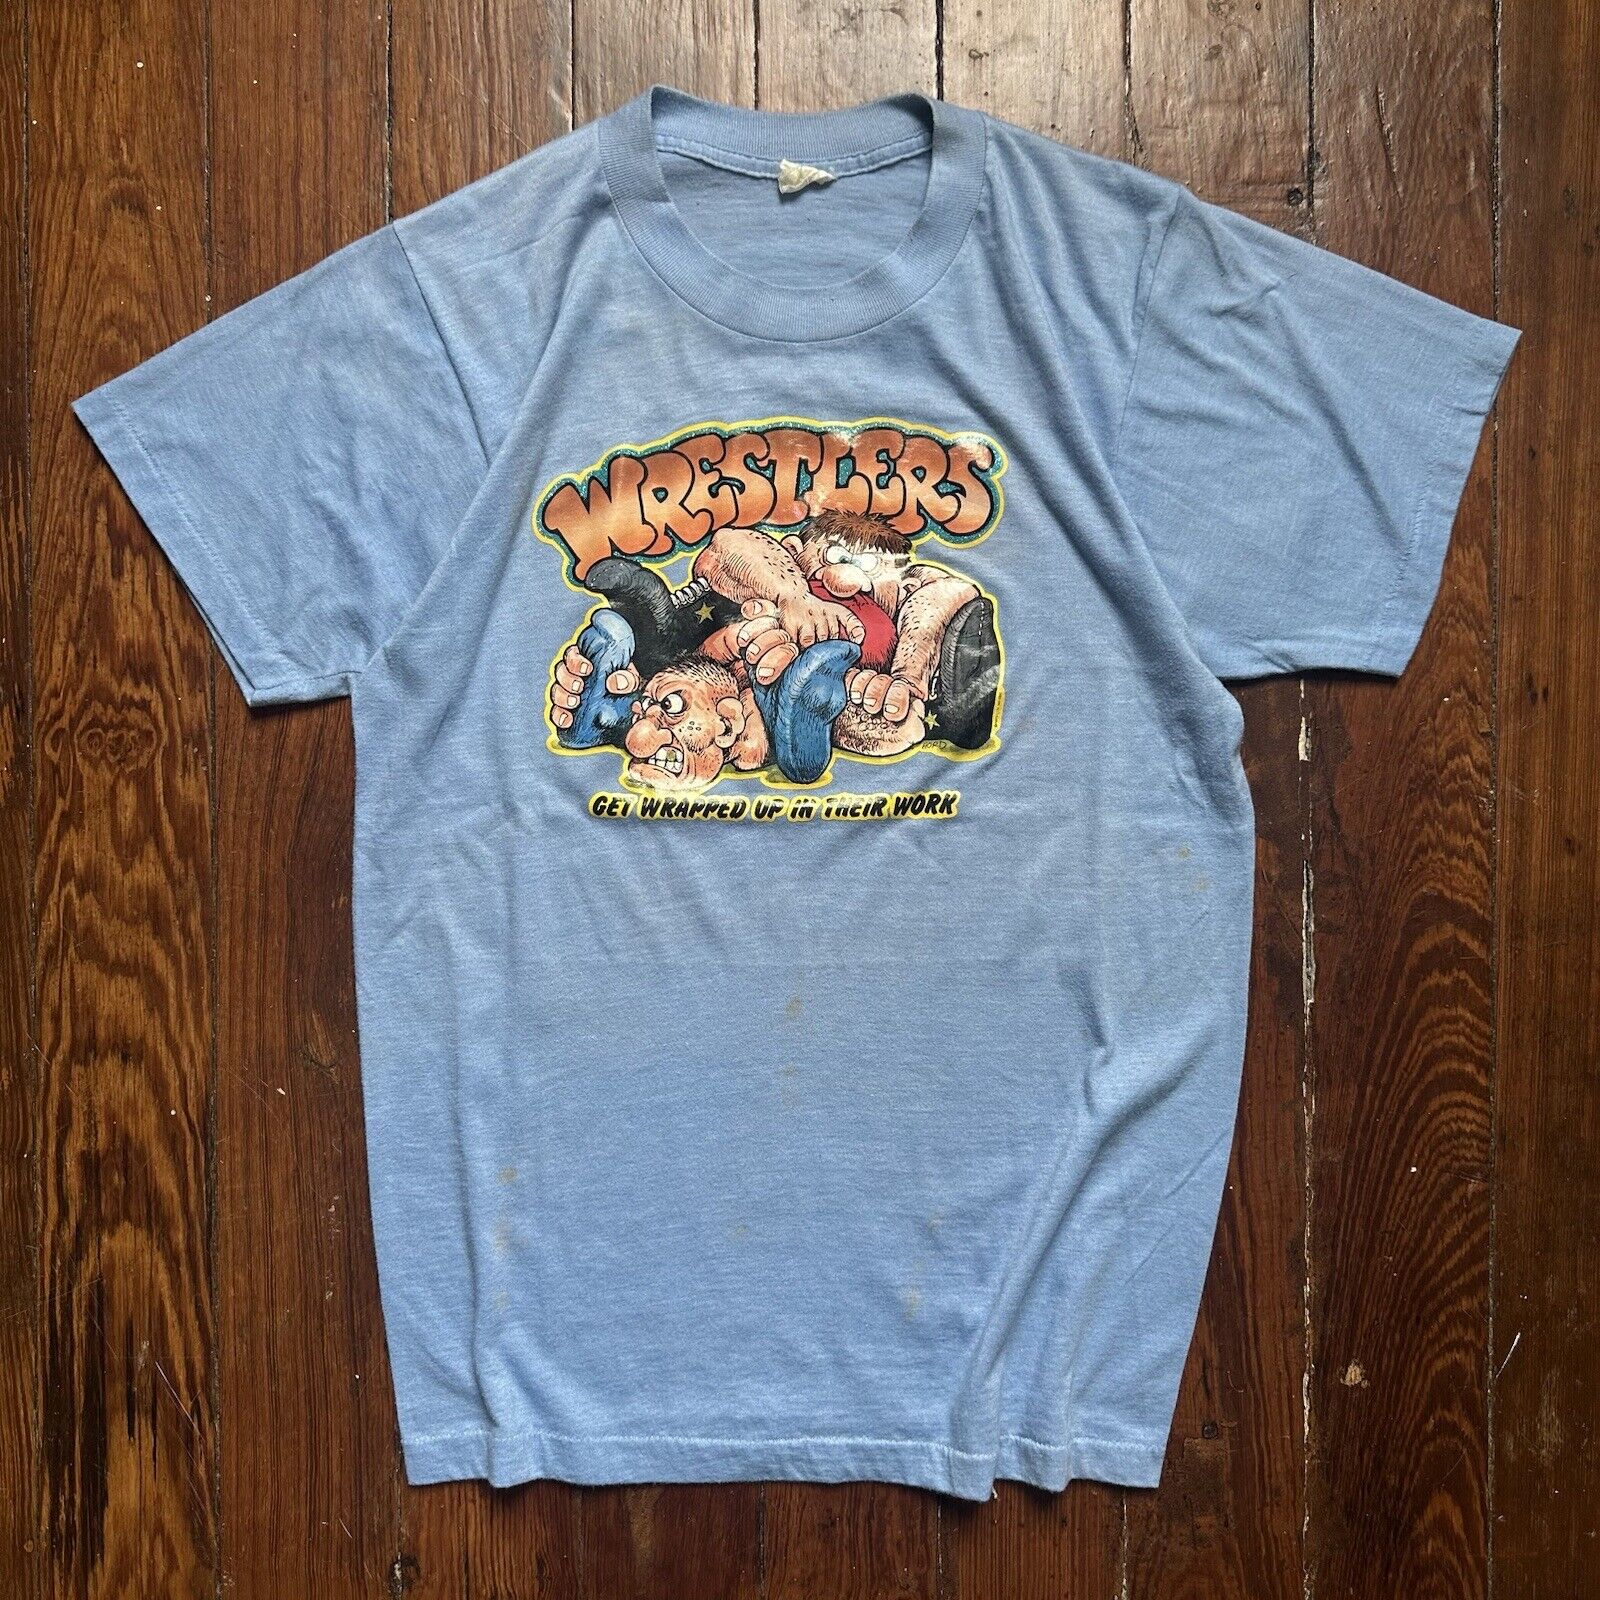 1970s/80s vintage wrestlers humor tee shirt